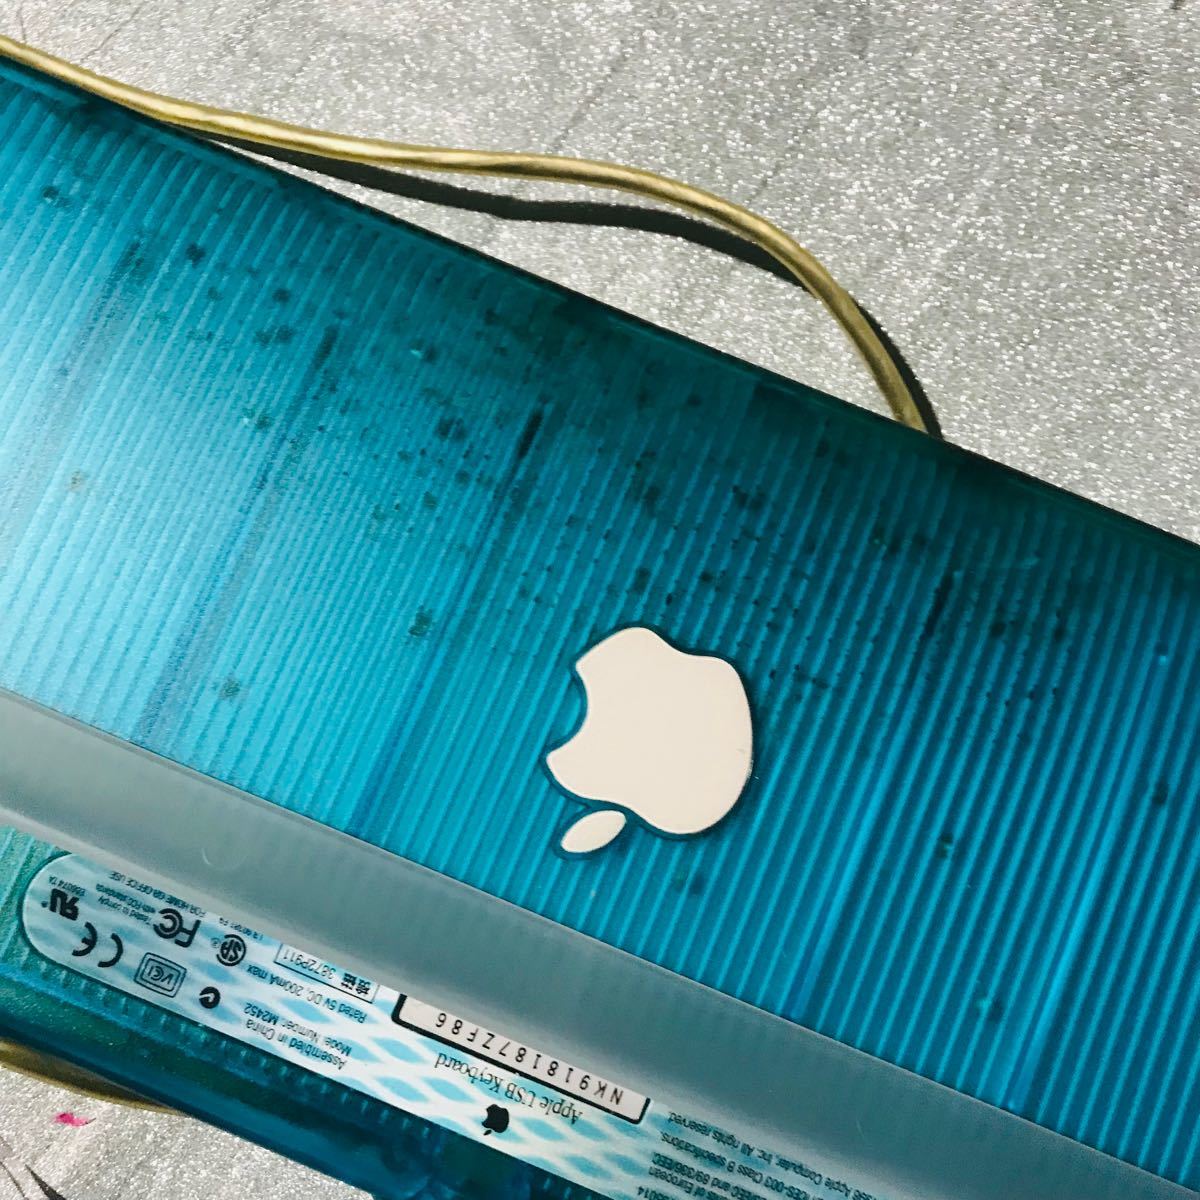 Apple純正 アップル純正 キーボード USB 青 緑 ライトグリーン ブルー M2452 Mac